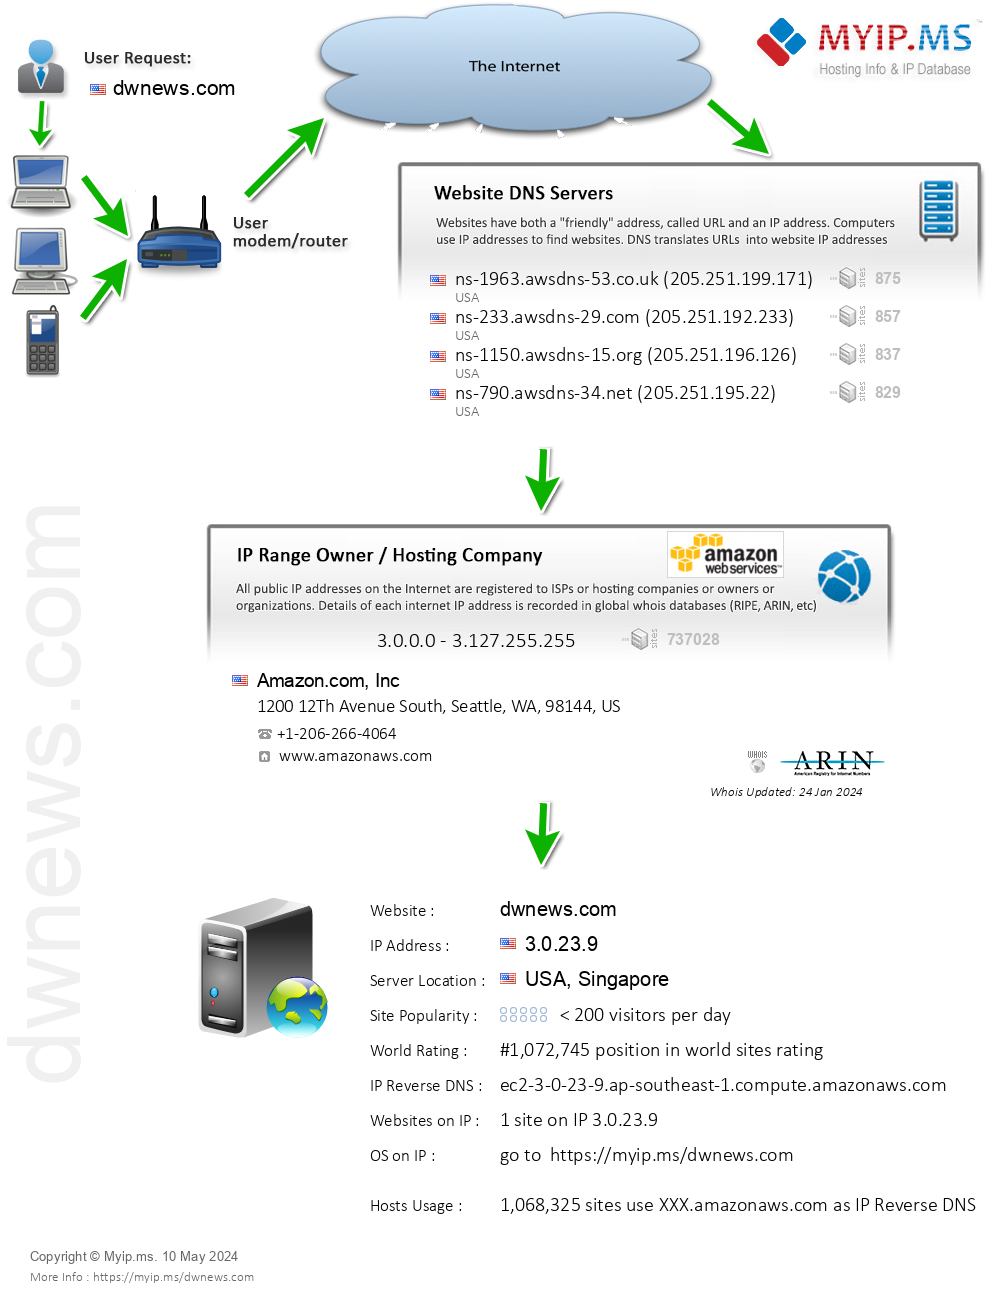 Dwnews.com - Website Hosting Visual IP Diagram